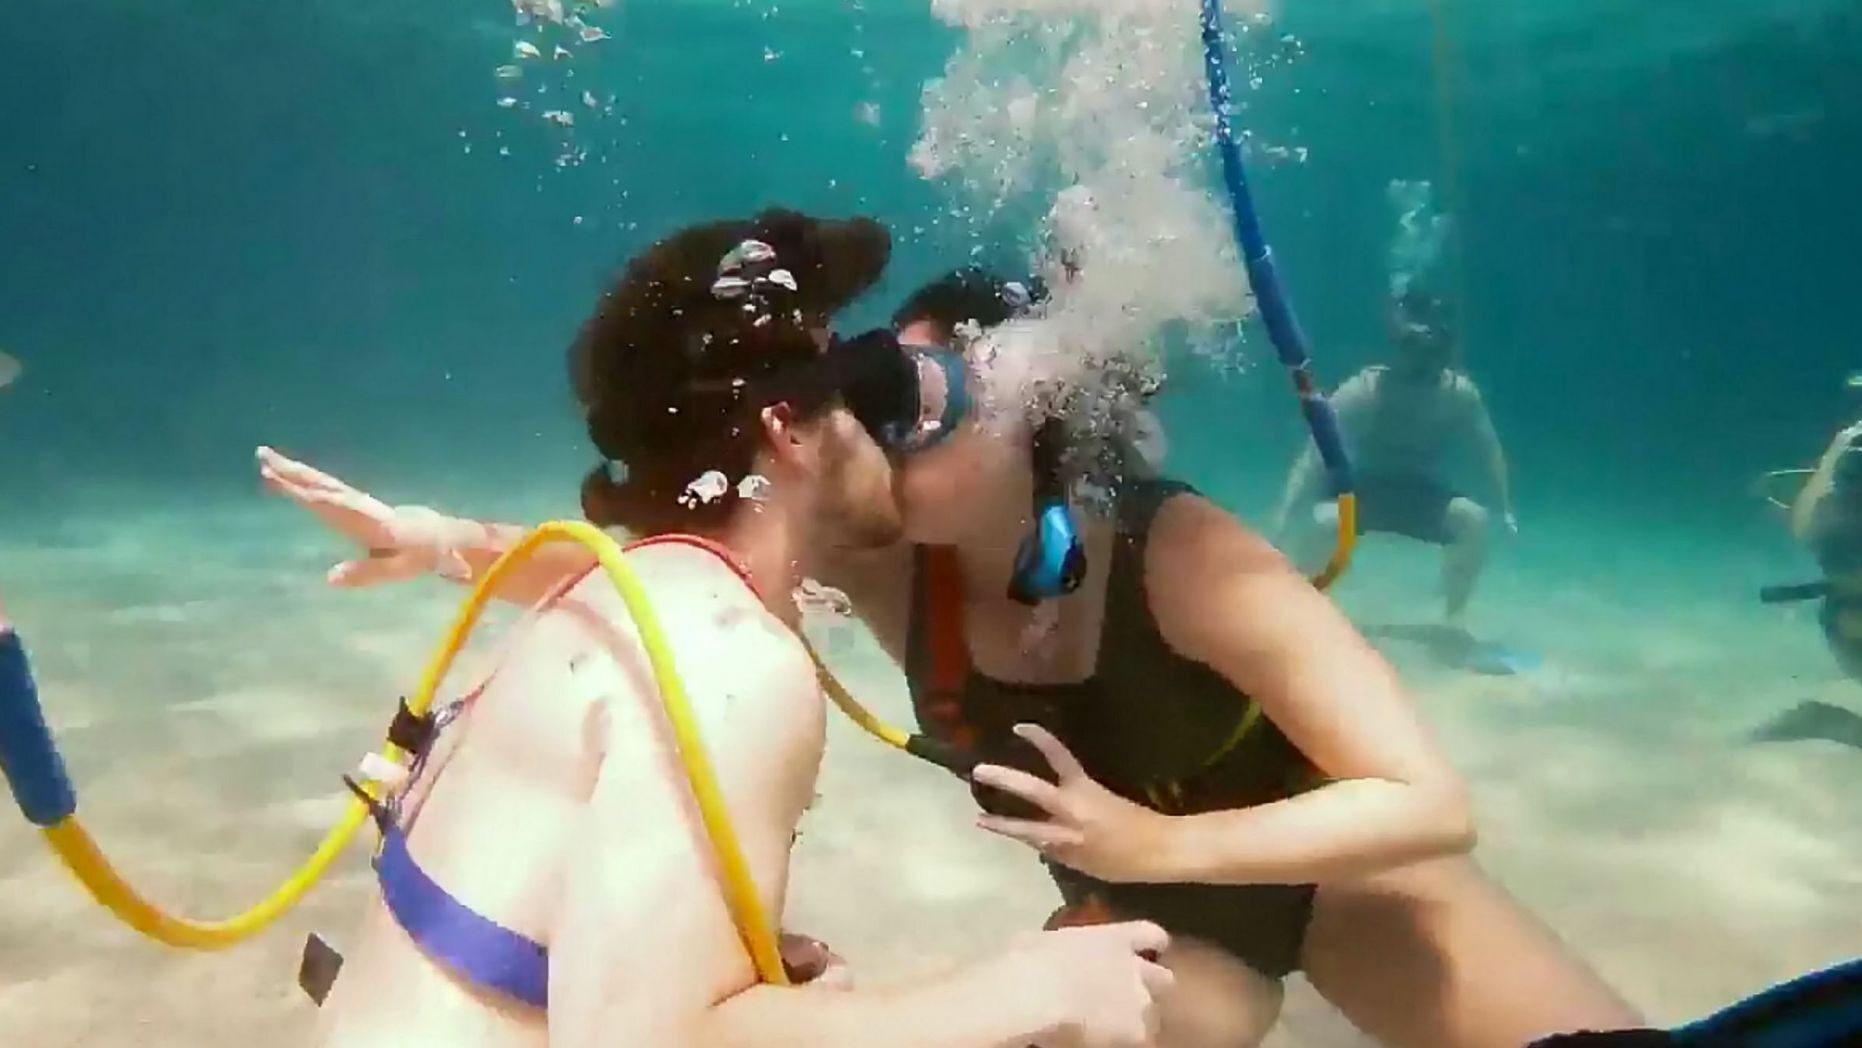 شاب يقدم عرض زواج لصديقته تحت الماء  (2)